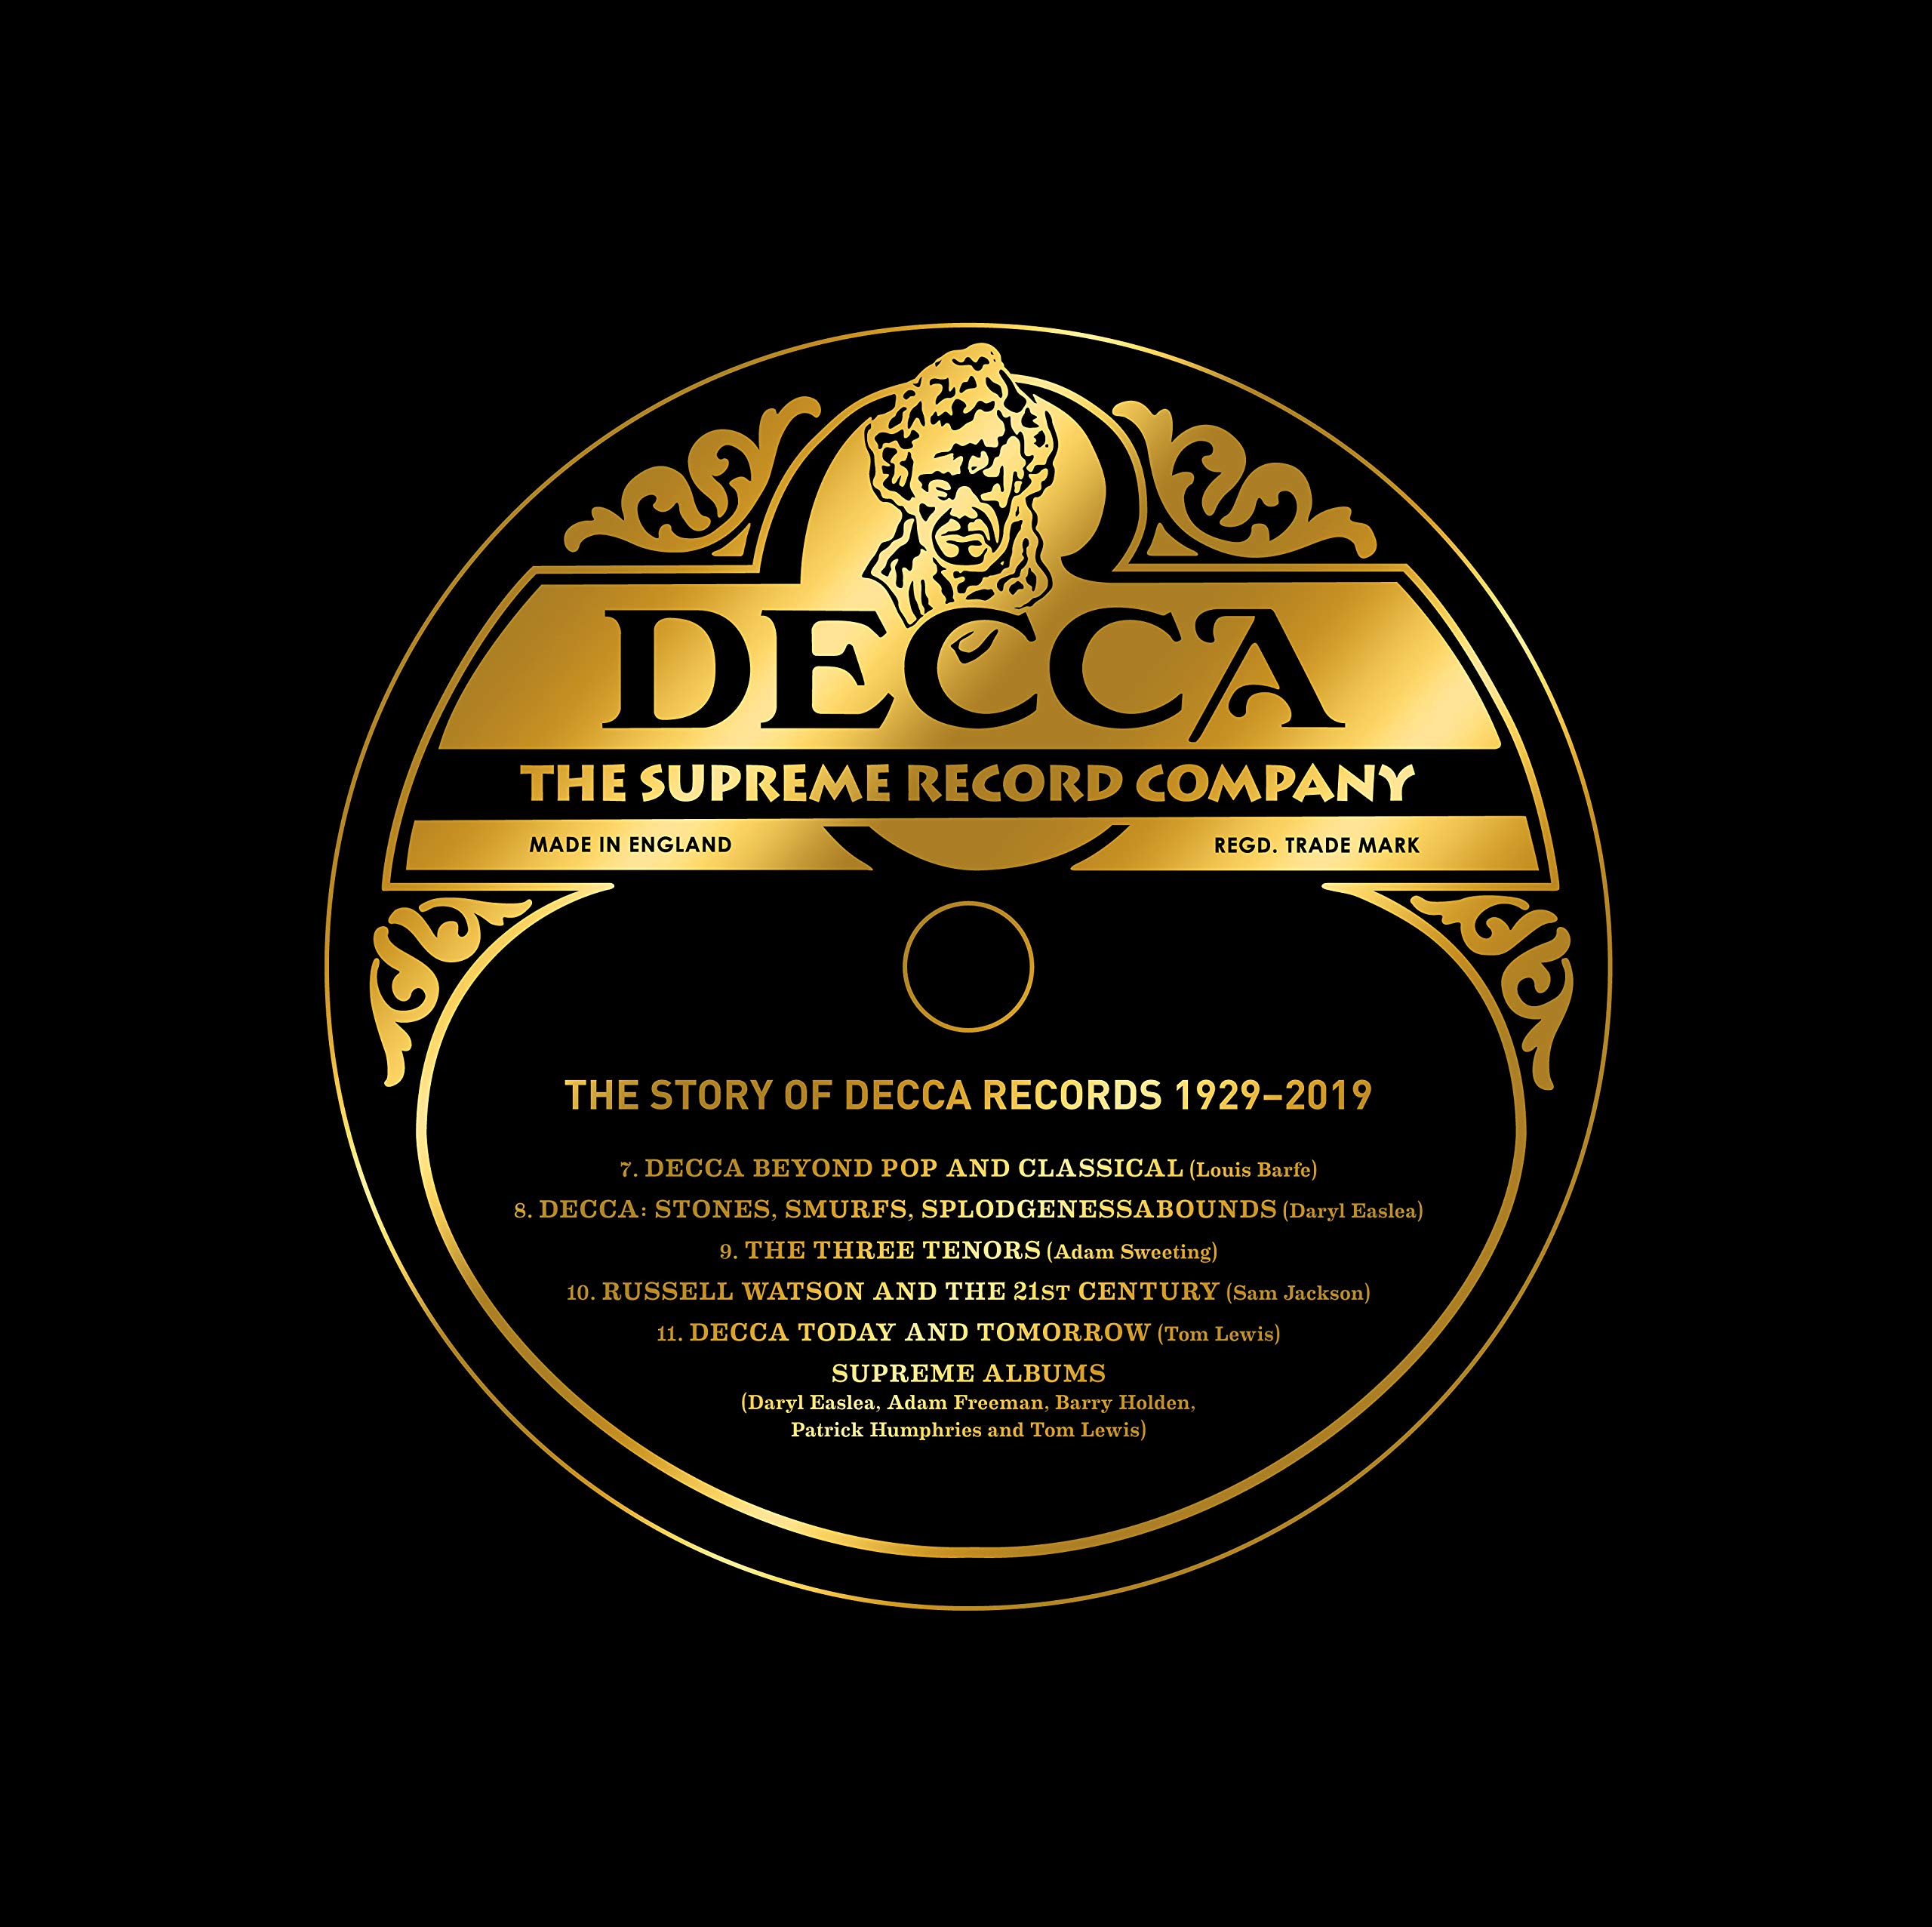 Decca. The Supreme Record Company 